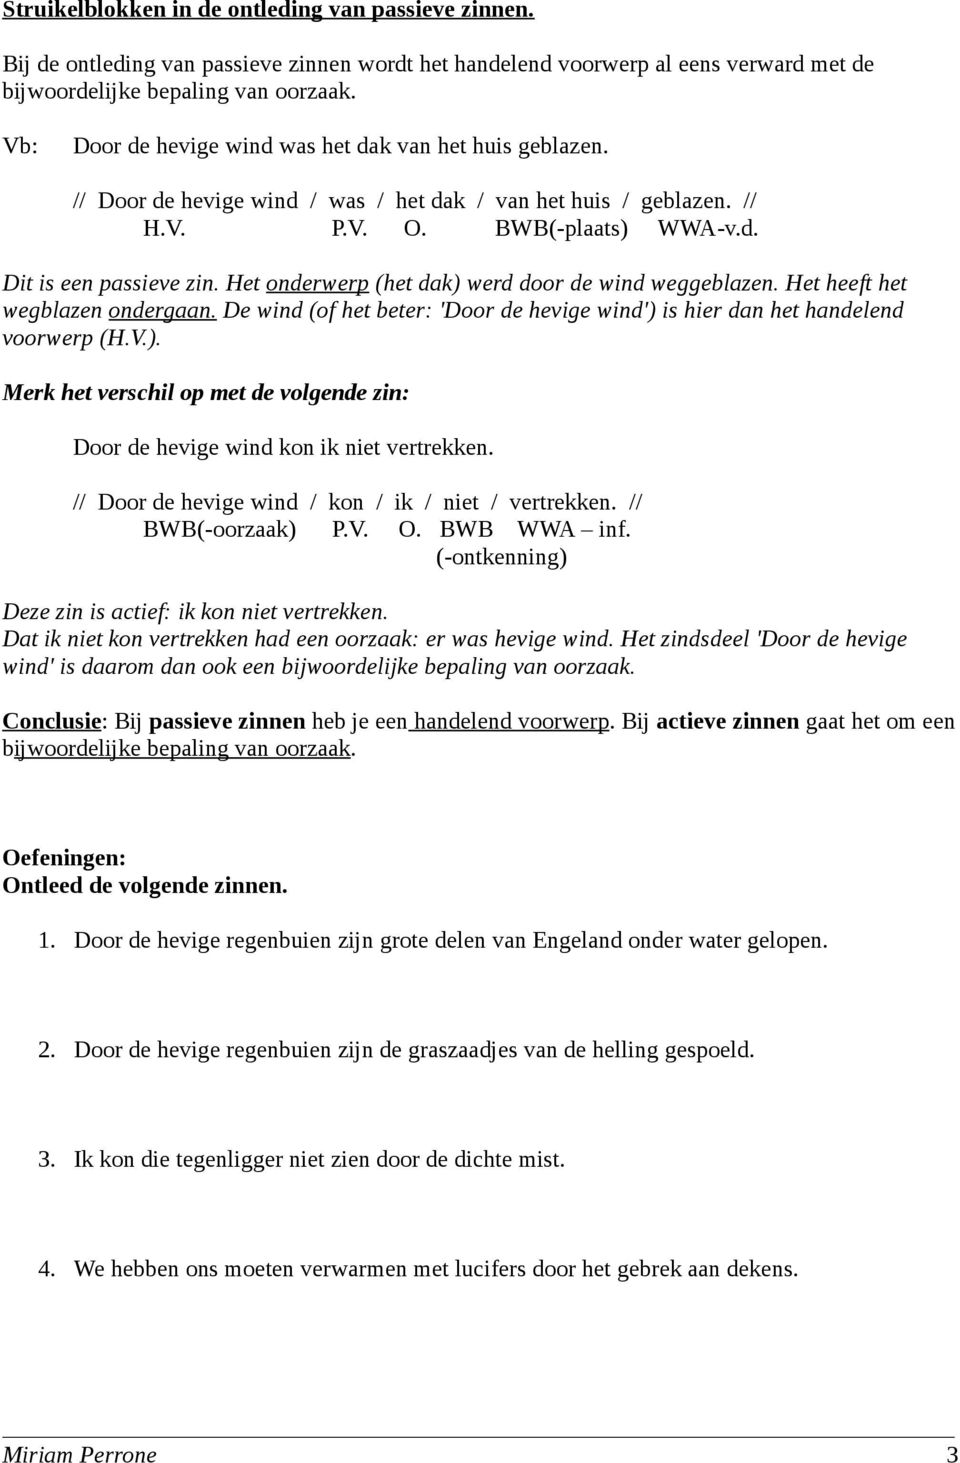 jungle negeren hoofdonderwijzer Struikelblok zinsontleding: Actief en passief - PDF Gratis download